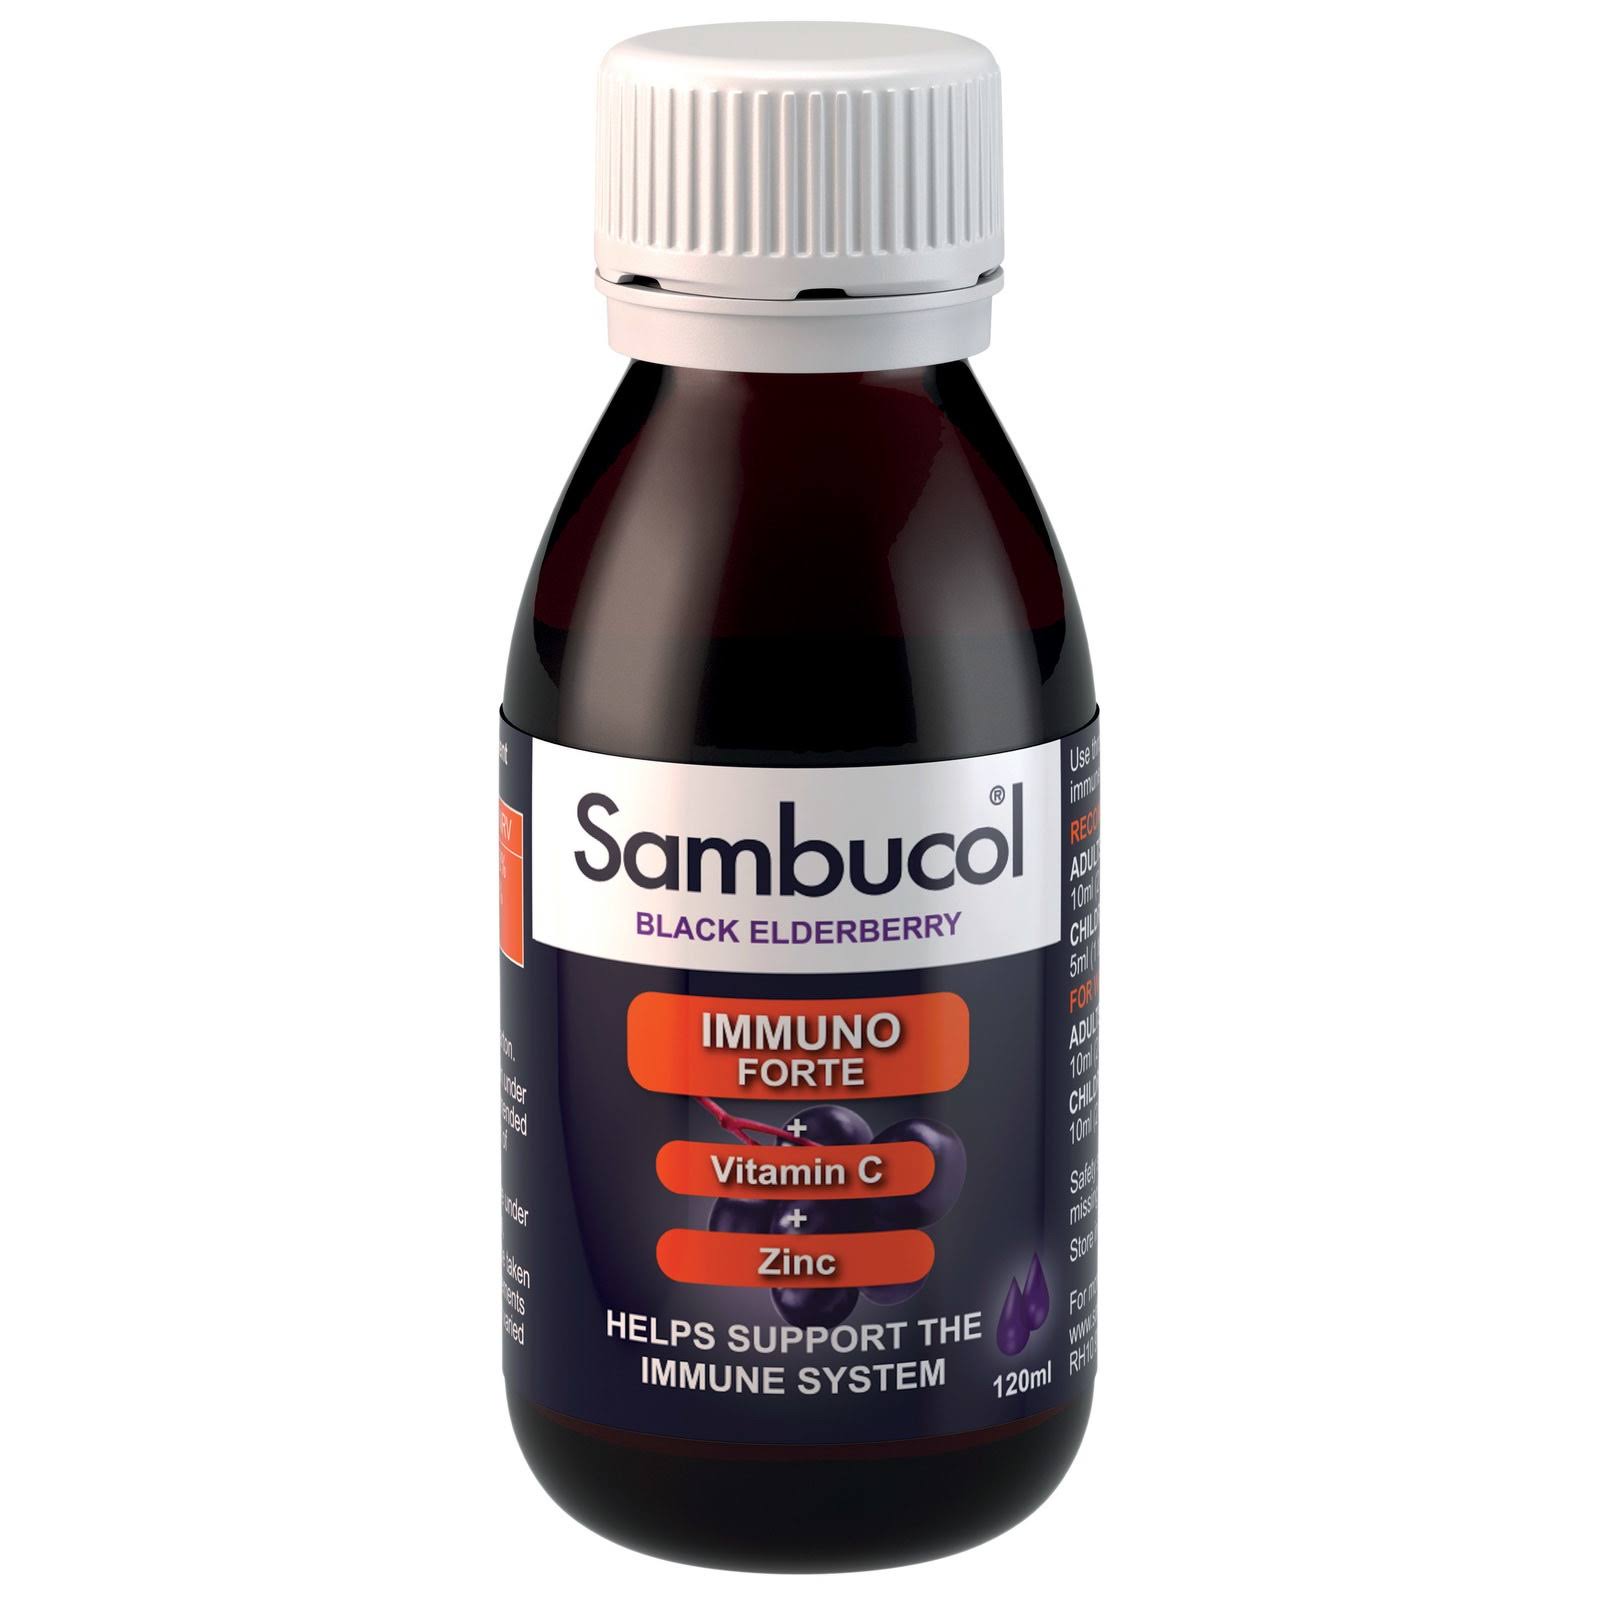 Sambucol Black Elderberry Immuno Forte Liquid Supplement - 120ml